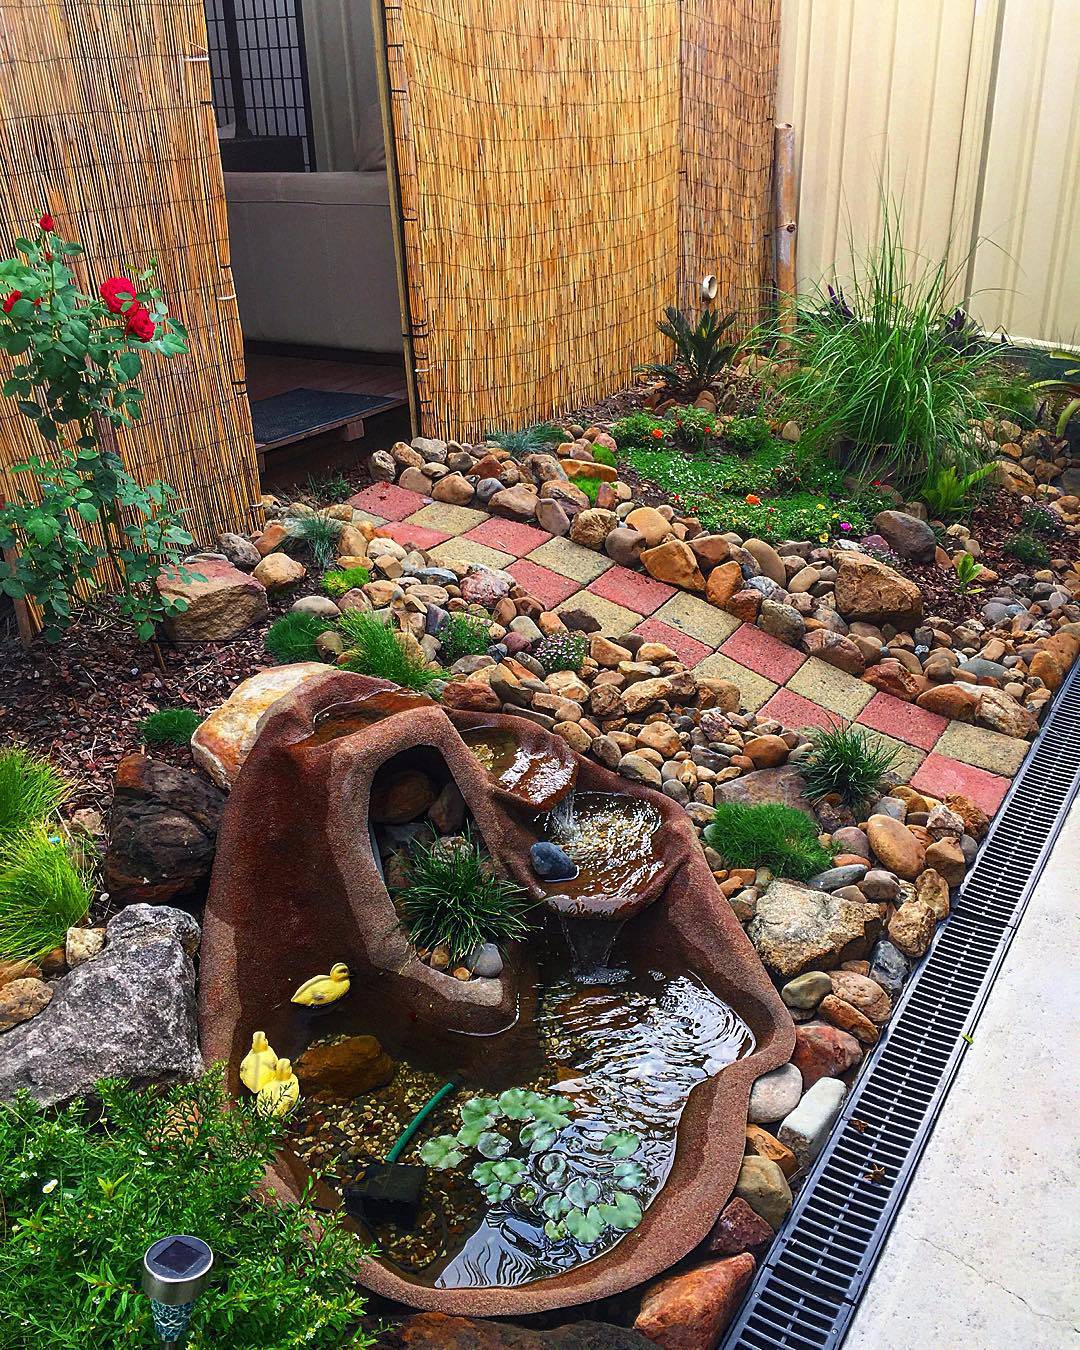 Unique Rock Garden Ideas